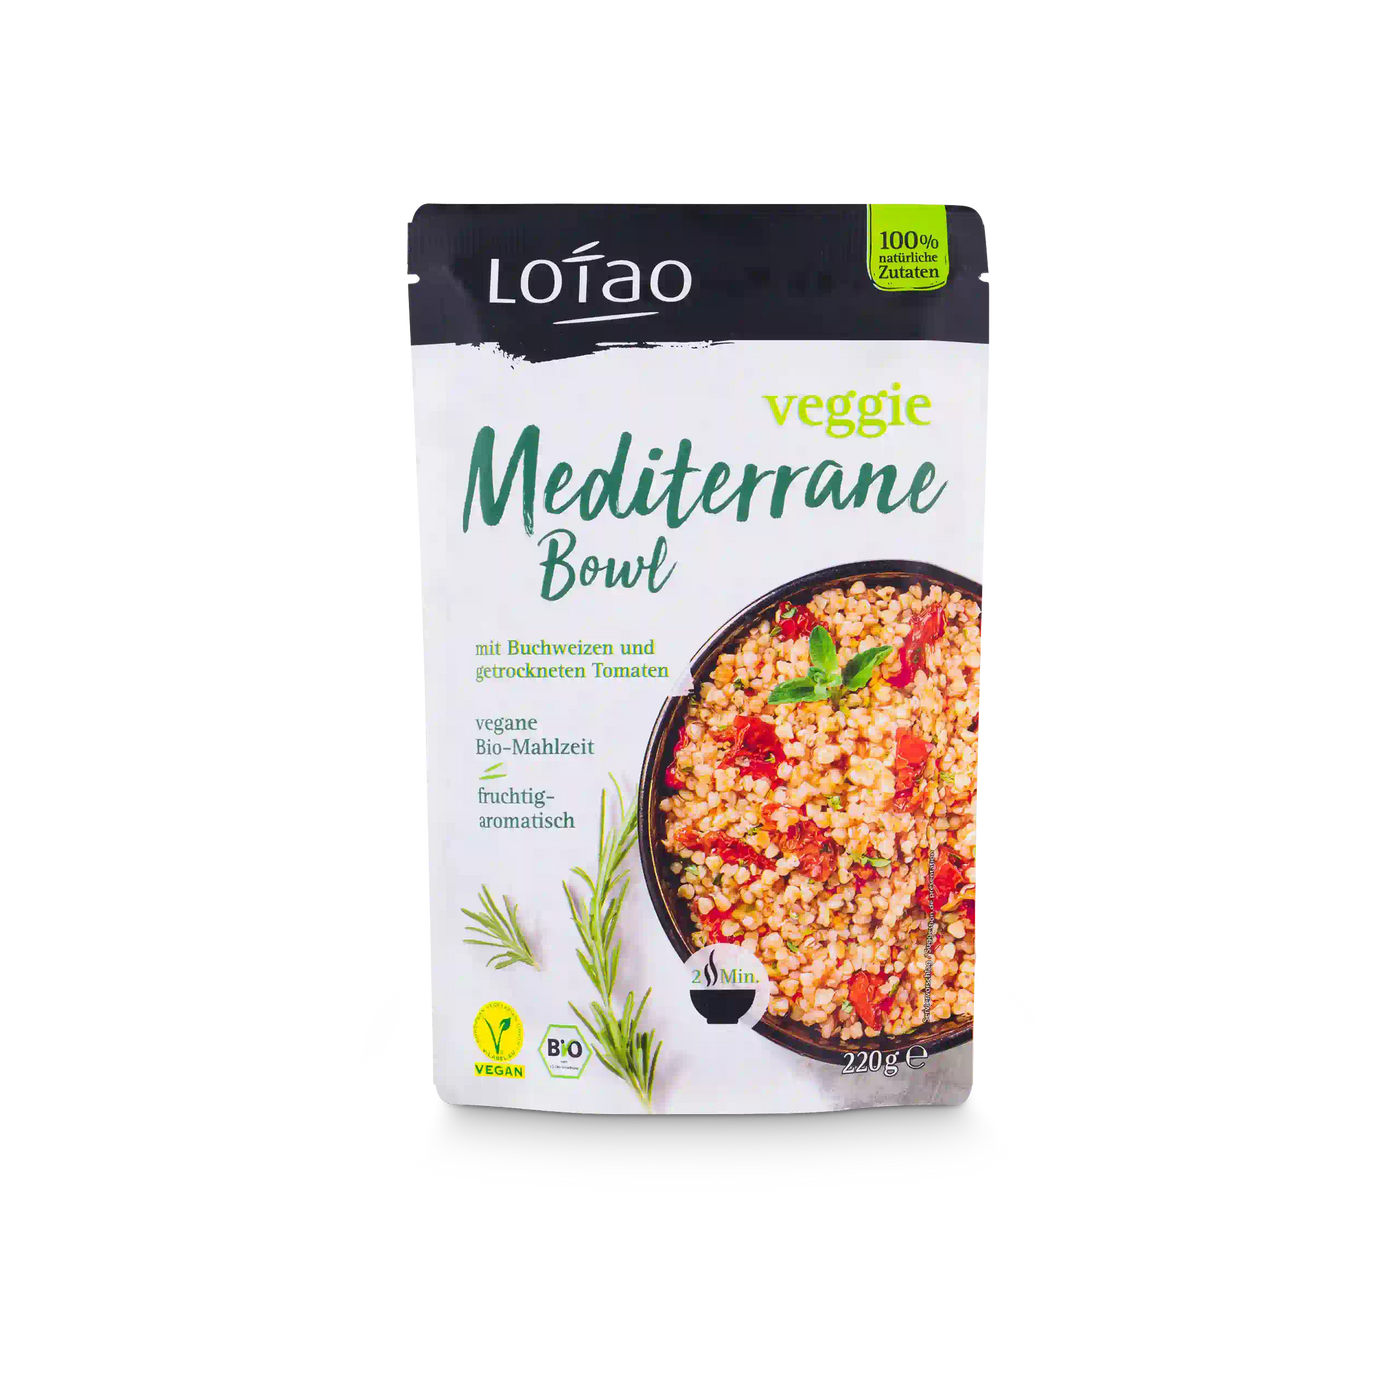 Packshot der Lotao Veggie Mediterranen Bowl, einem bio-veganen Fertiggericht mit Buchweizen und getrockneten als vegane Bio-Mahlzeit